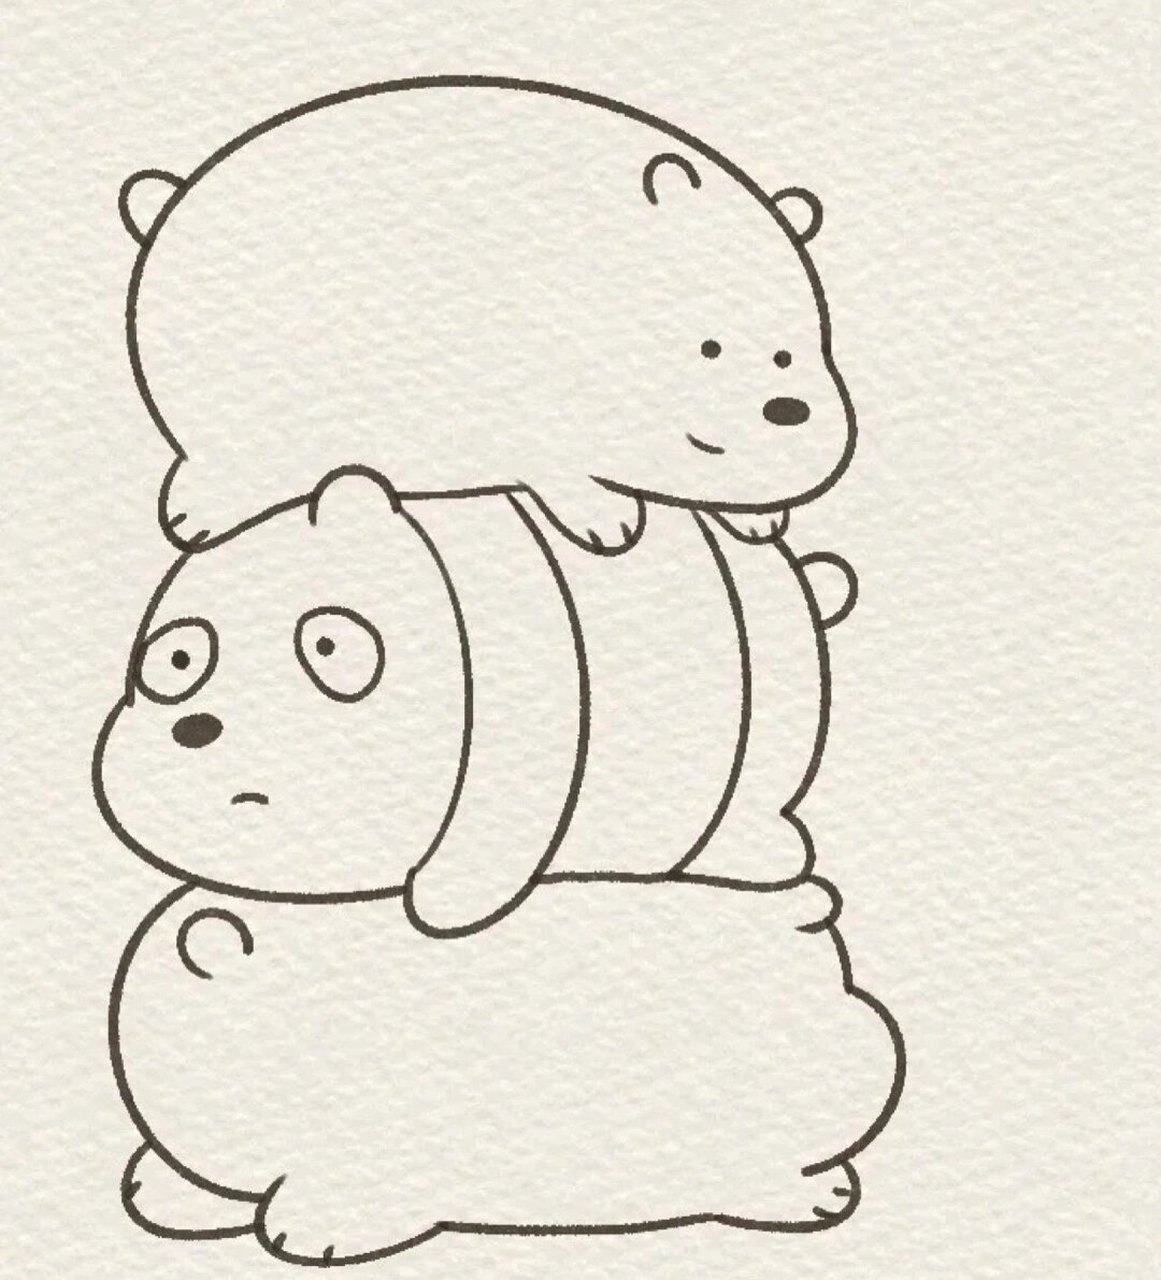 三只裸熊简笔画组合图片